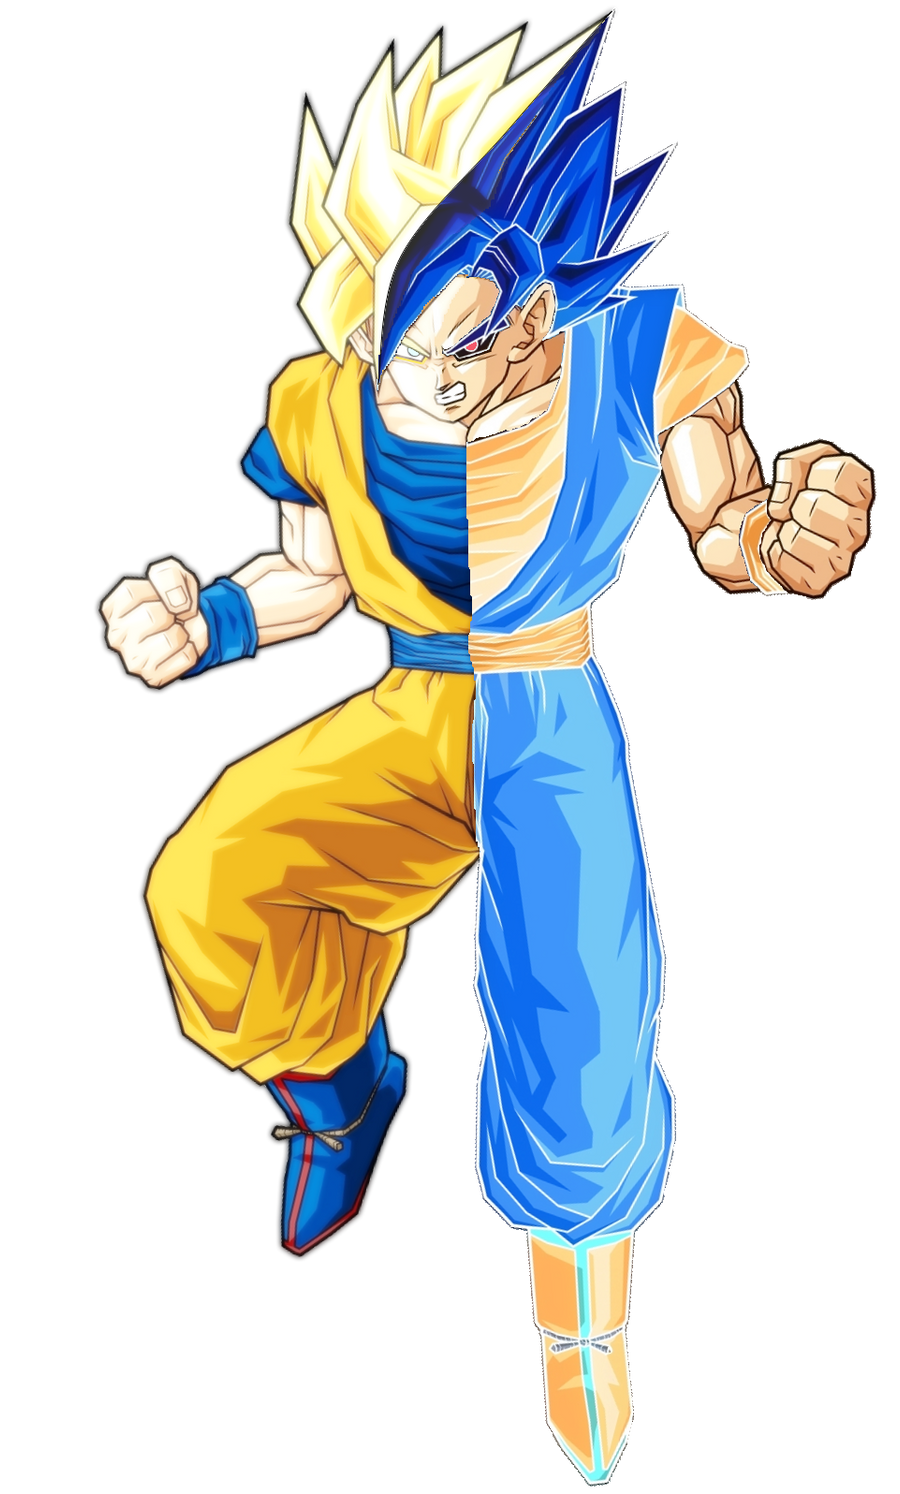 Goku in Super Saiyan Blue 2 by Sersiso  Dragon ball super artwork, Anime  dragon ball goku, Dragon ball super manga